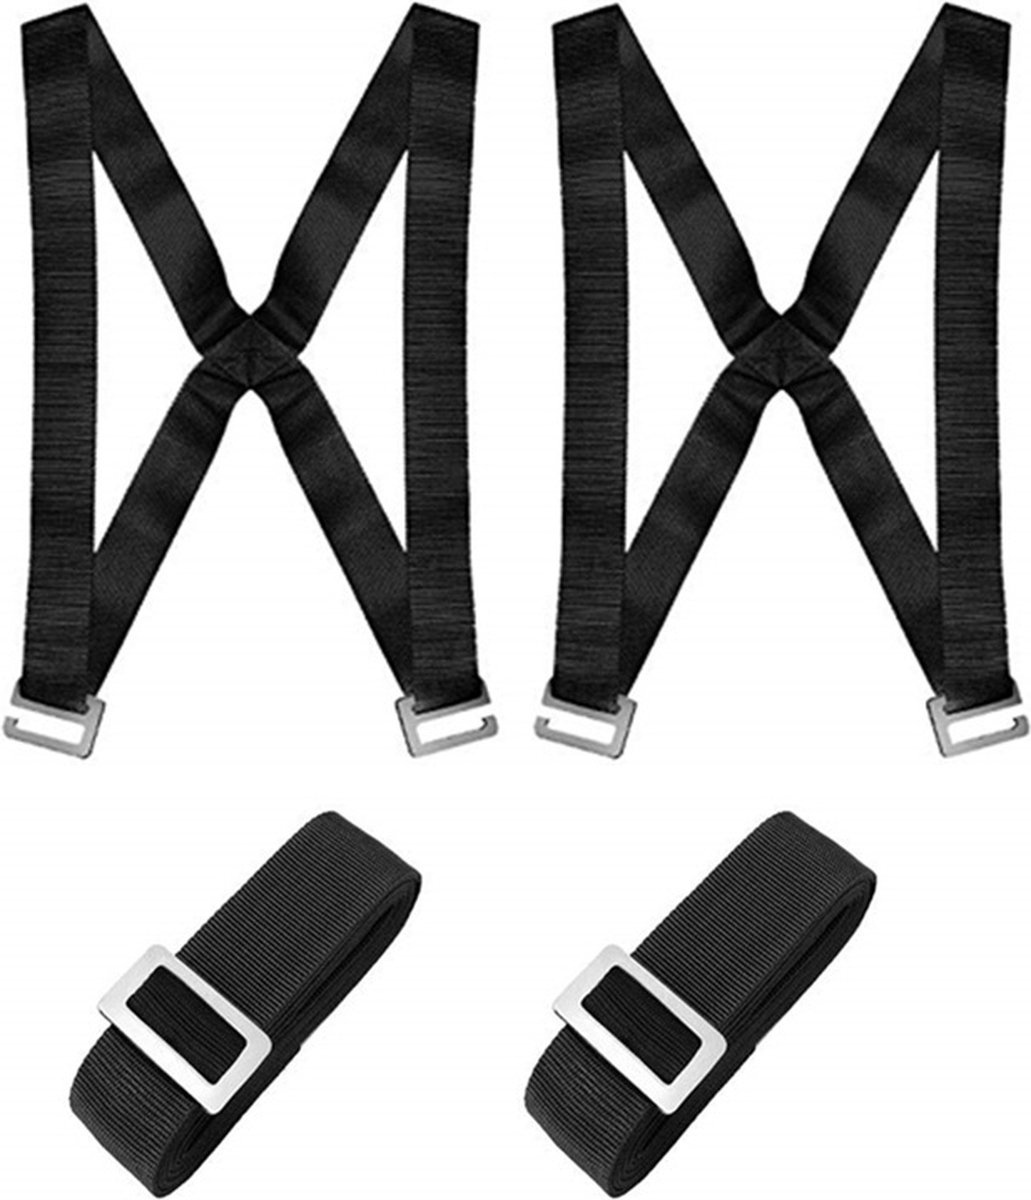 Wiwi Home Move - Verhuis Harnas met Tilbanden Set - Verhuishulp - Moving Straps - Belt voor Verhuizing - 2 persoons draagriem - Transportriem - Hijsband - Spanbanden - Verhuisdozen - Ergonomisch - 2 gebruiksfuncties